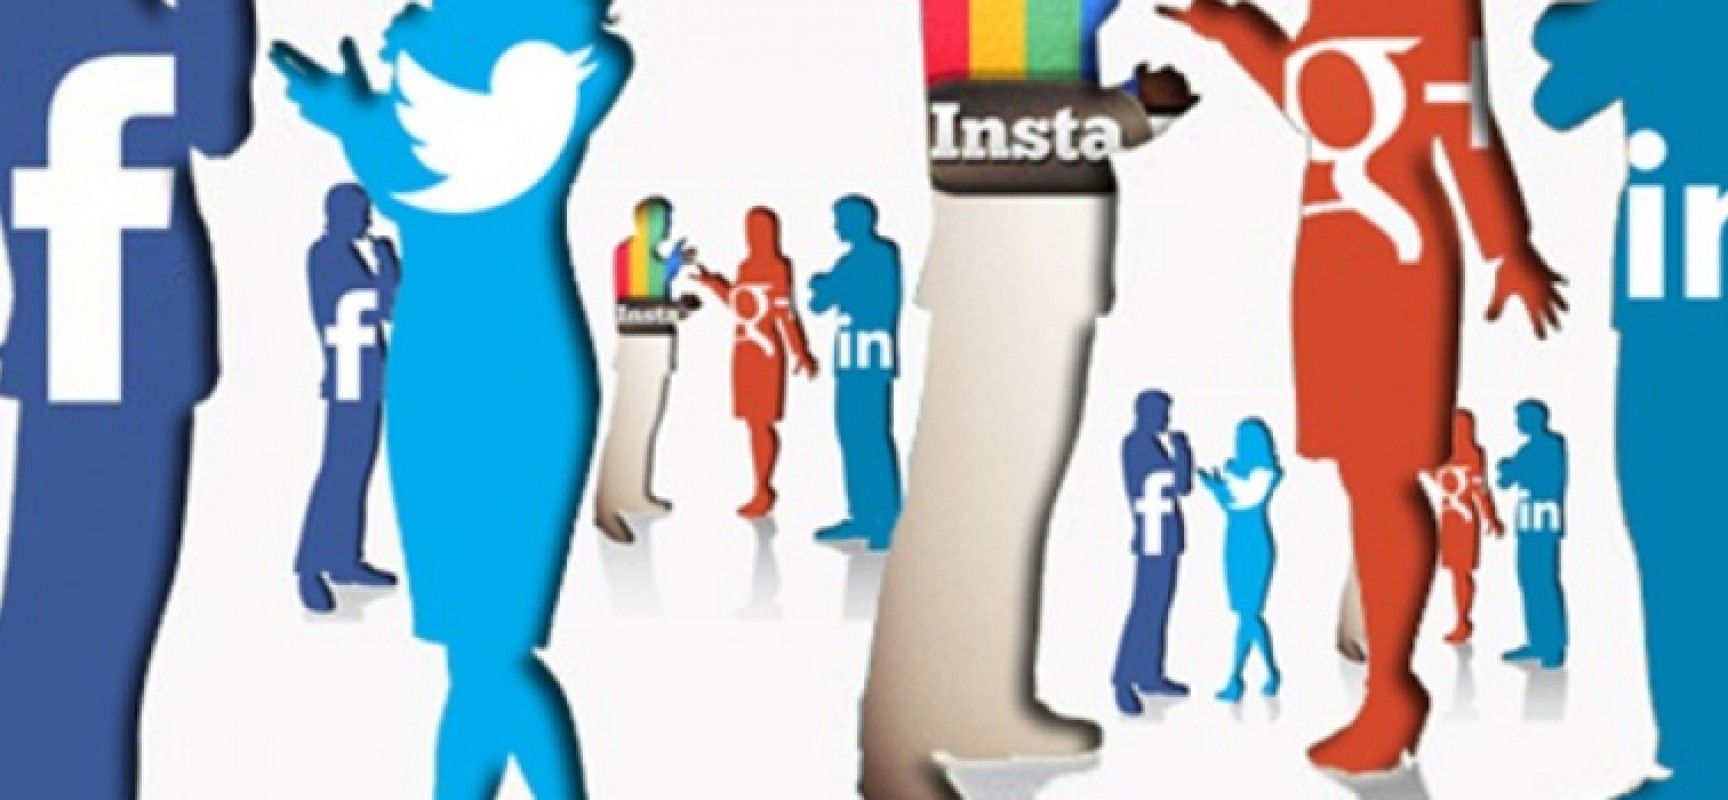 “Le relazioni ai tempi di Facebook” a cura della dott.ssa Renata Rana